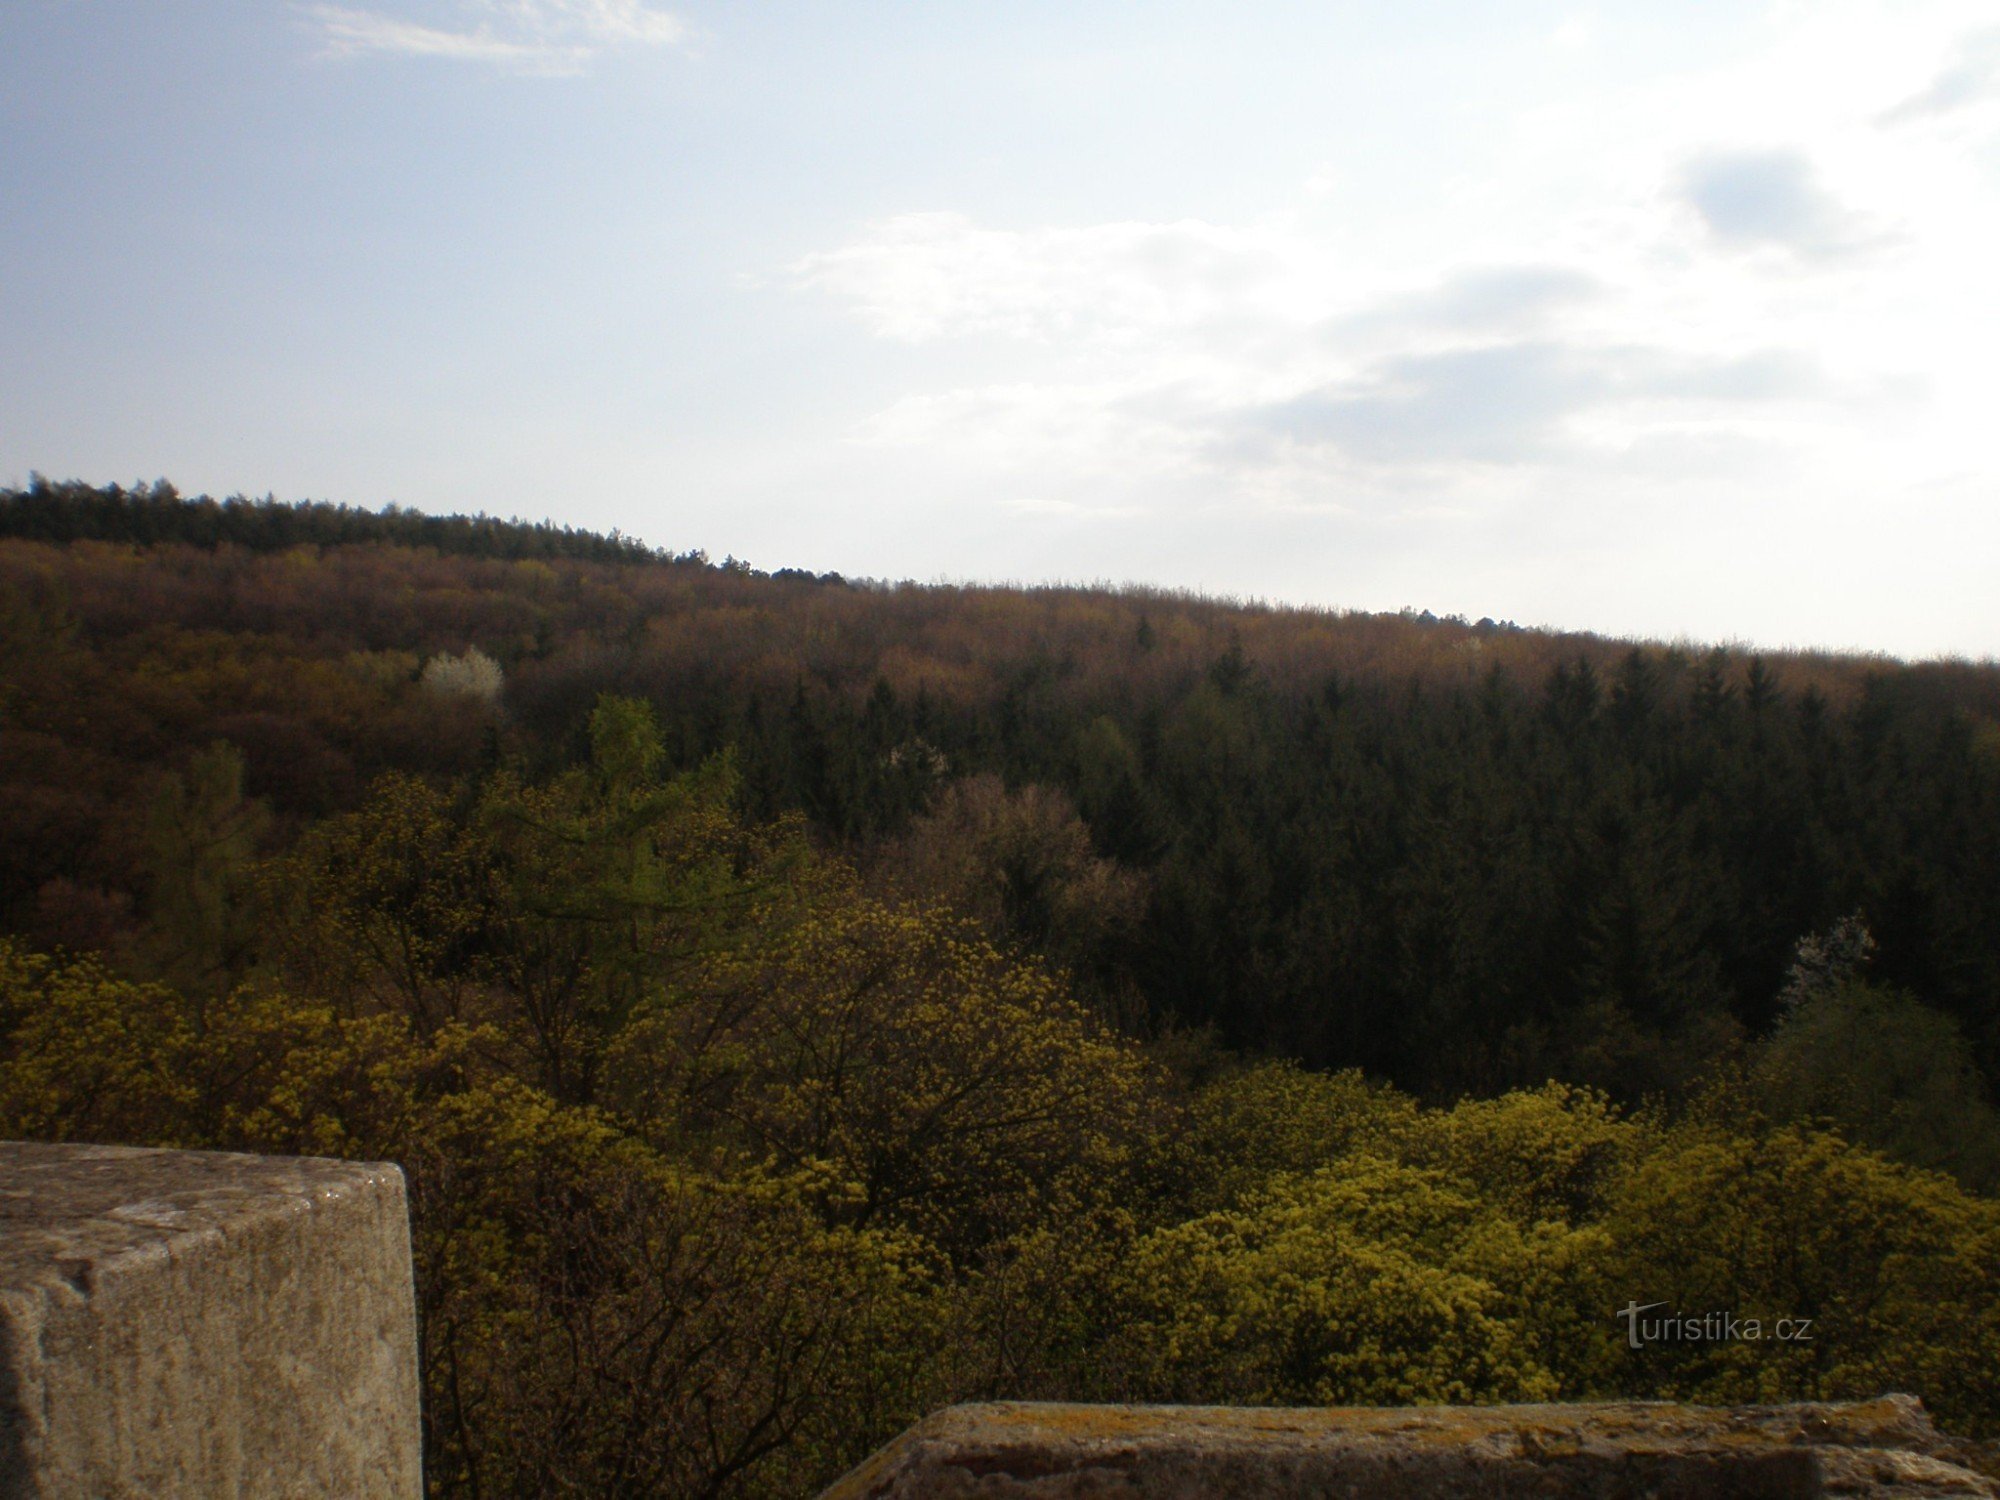 Uitzicht vanaf de uitkijktoren naar het bospark Cibulka